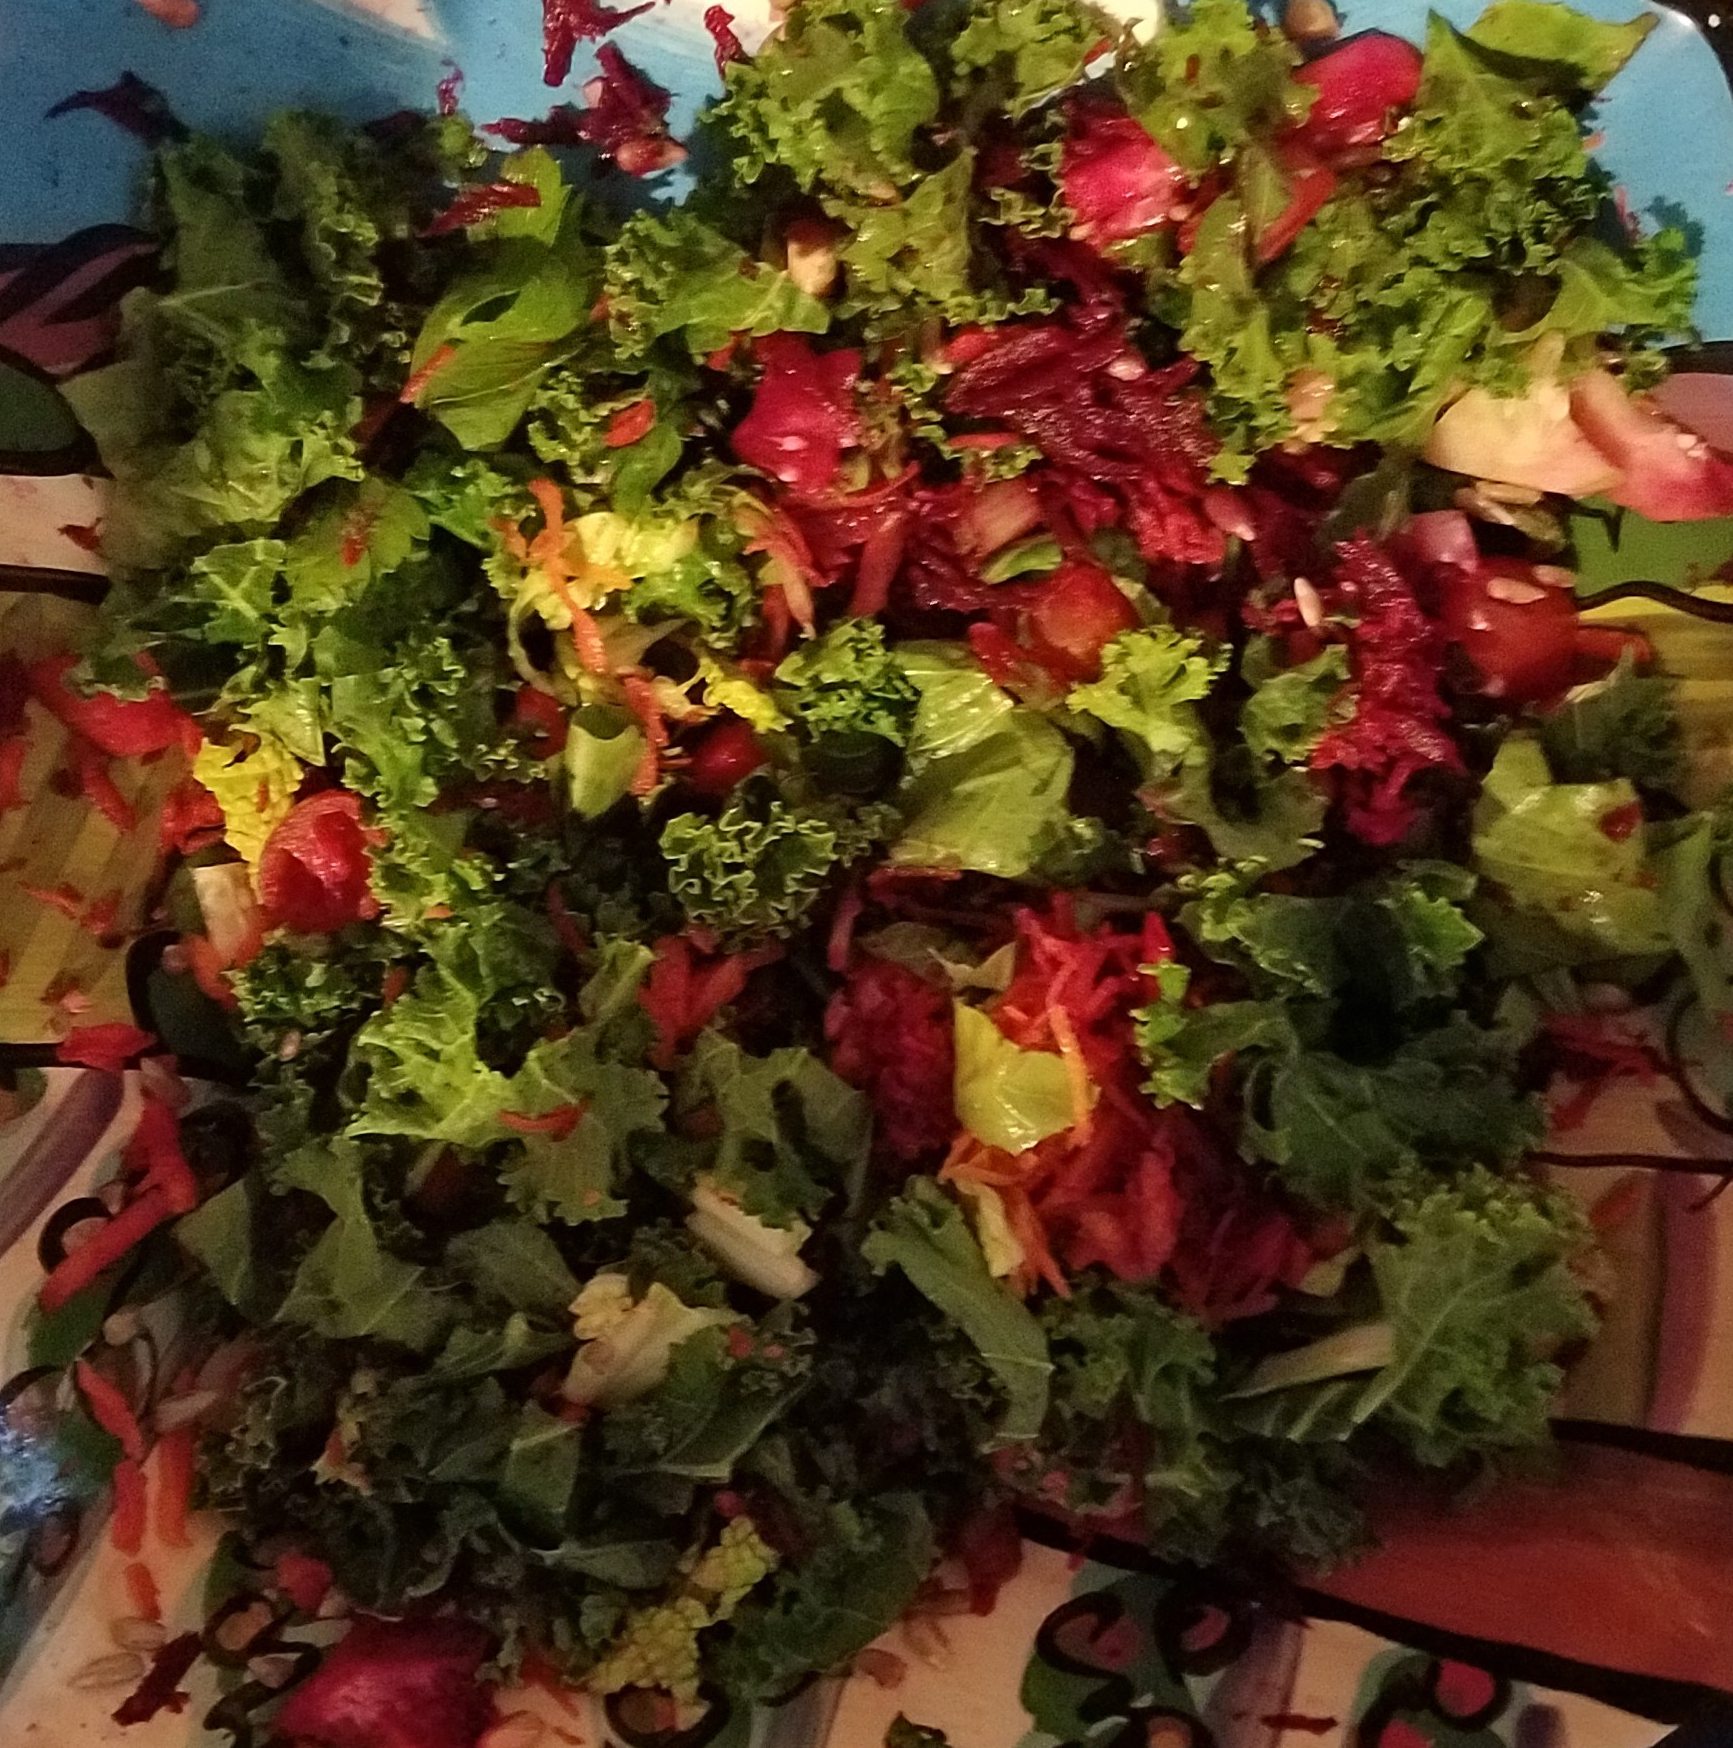 Delicously Nutritious Garden Salad!